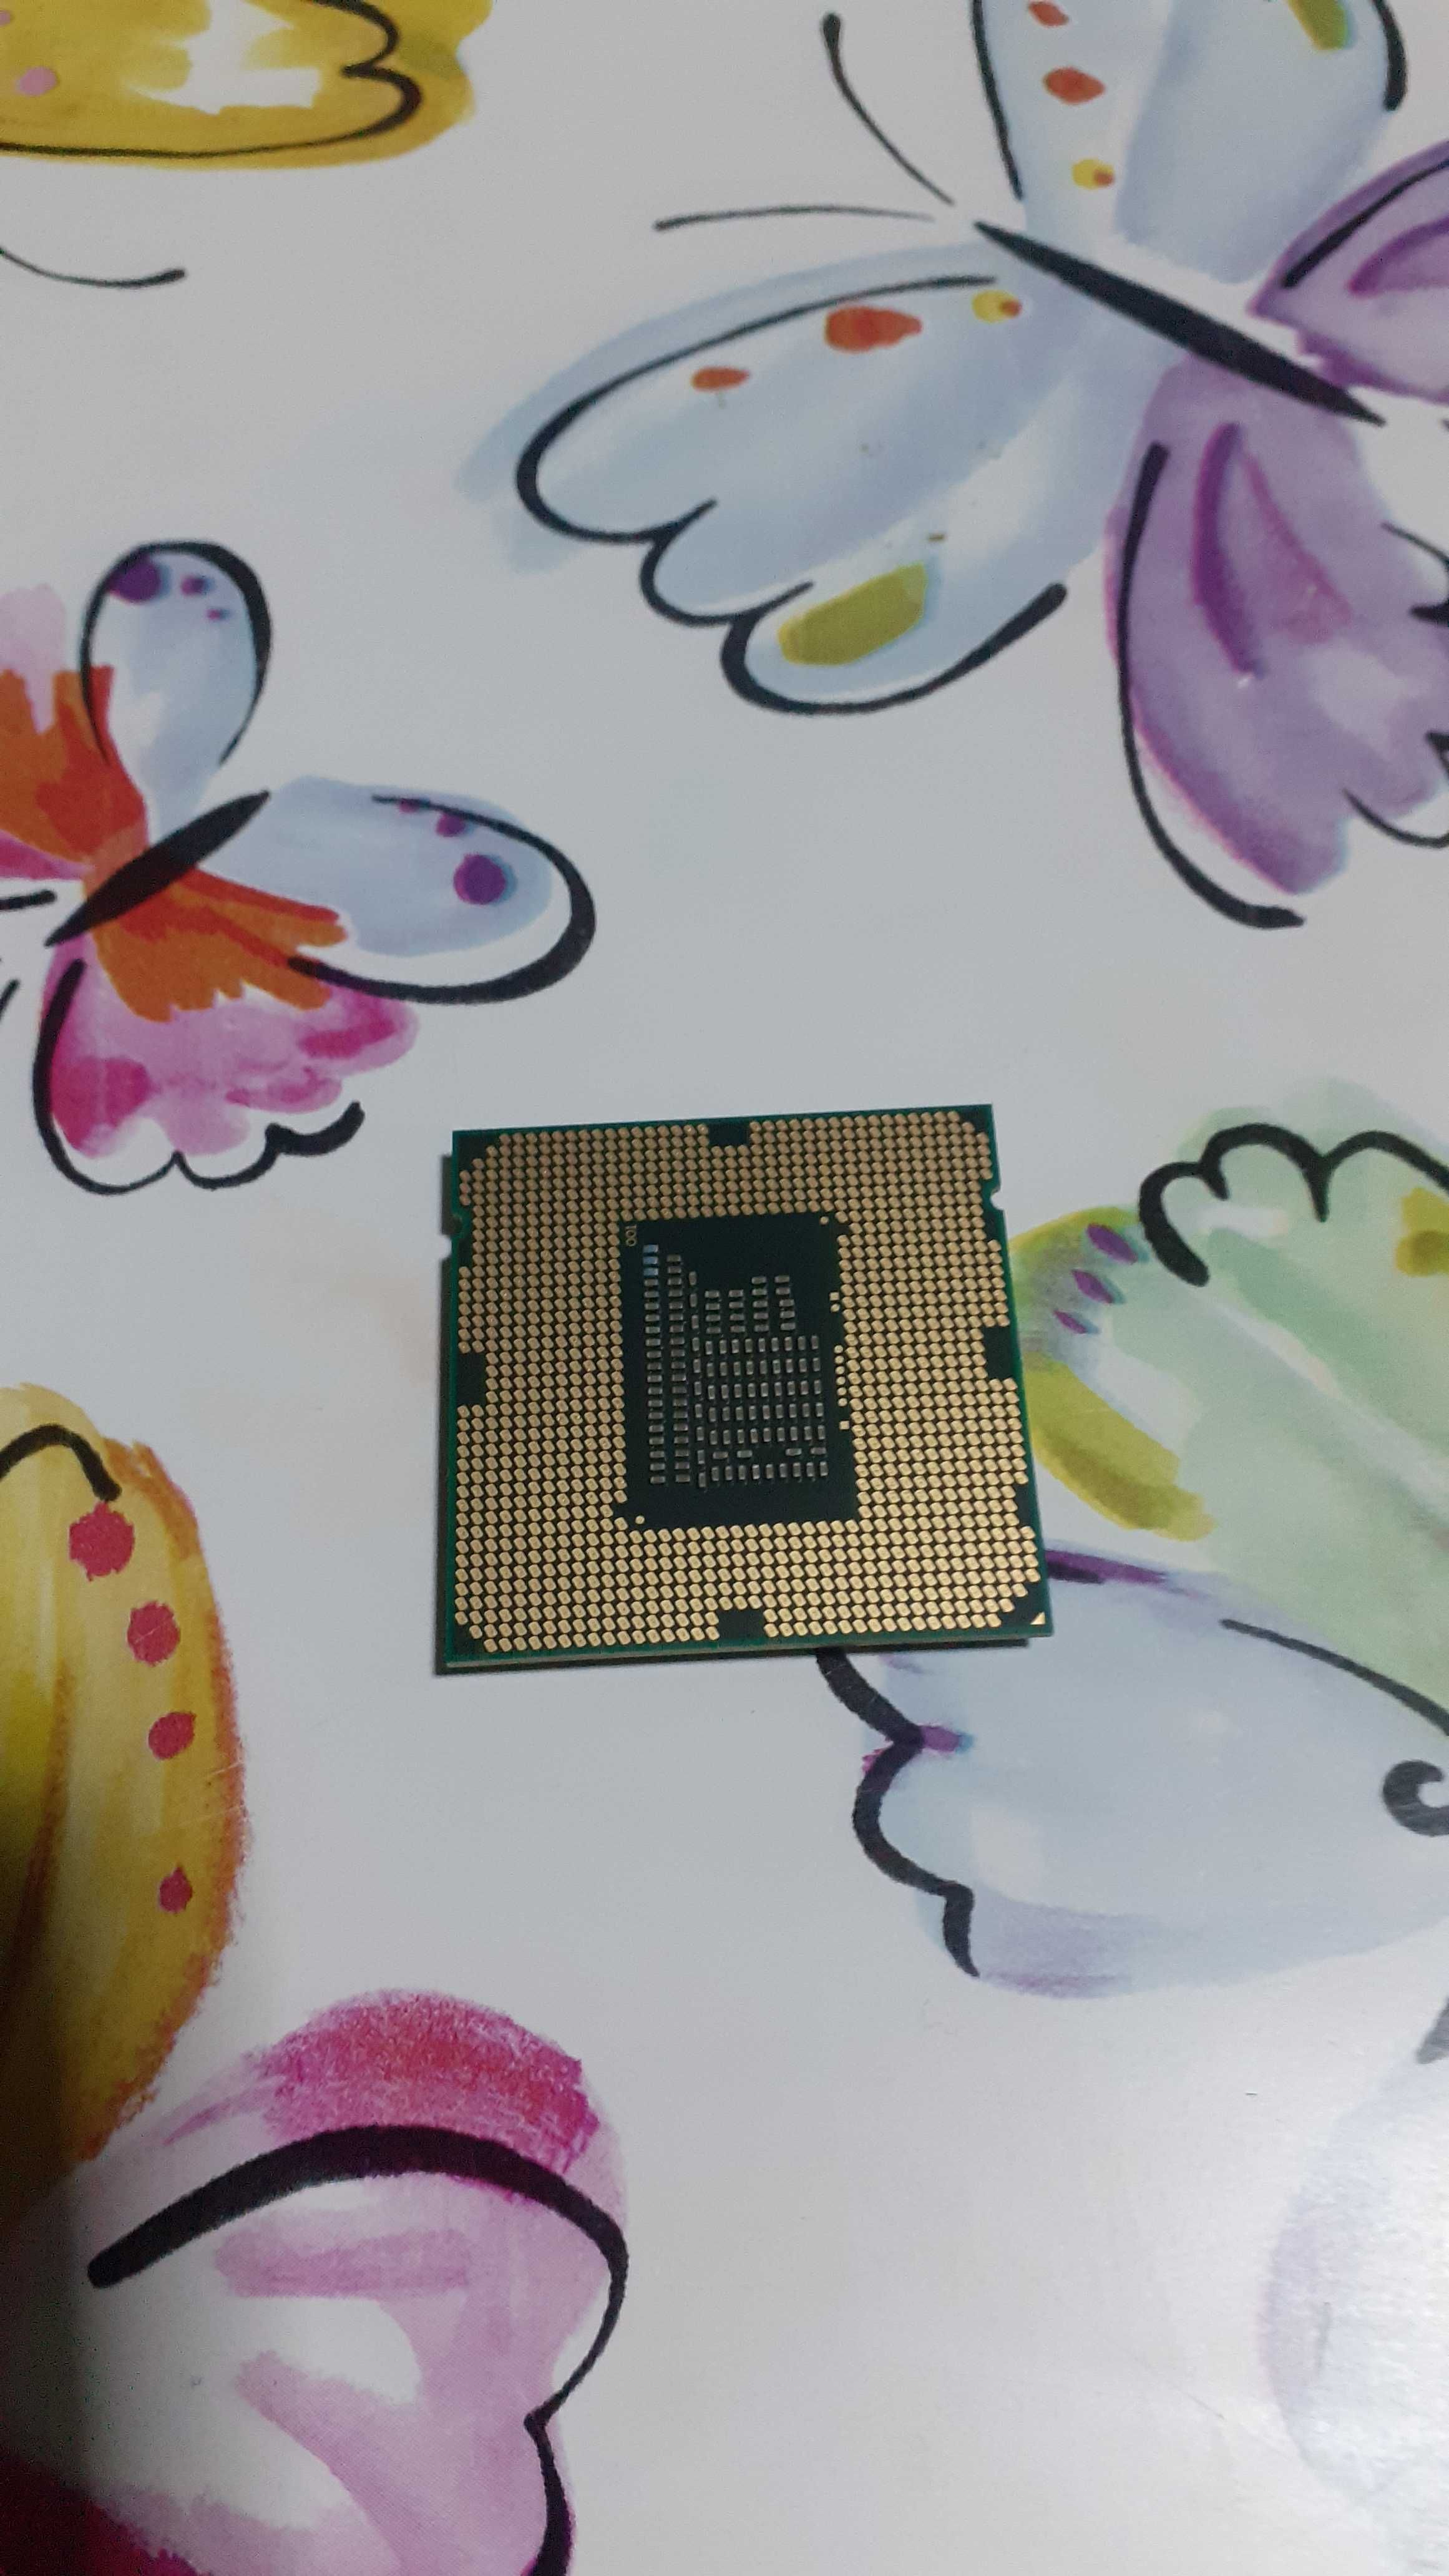 De Vanzare Procesor Intel I3